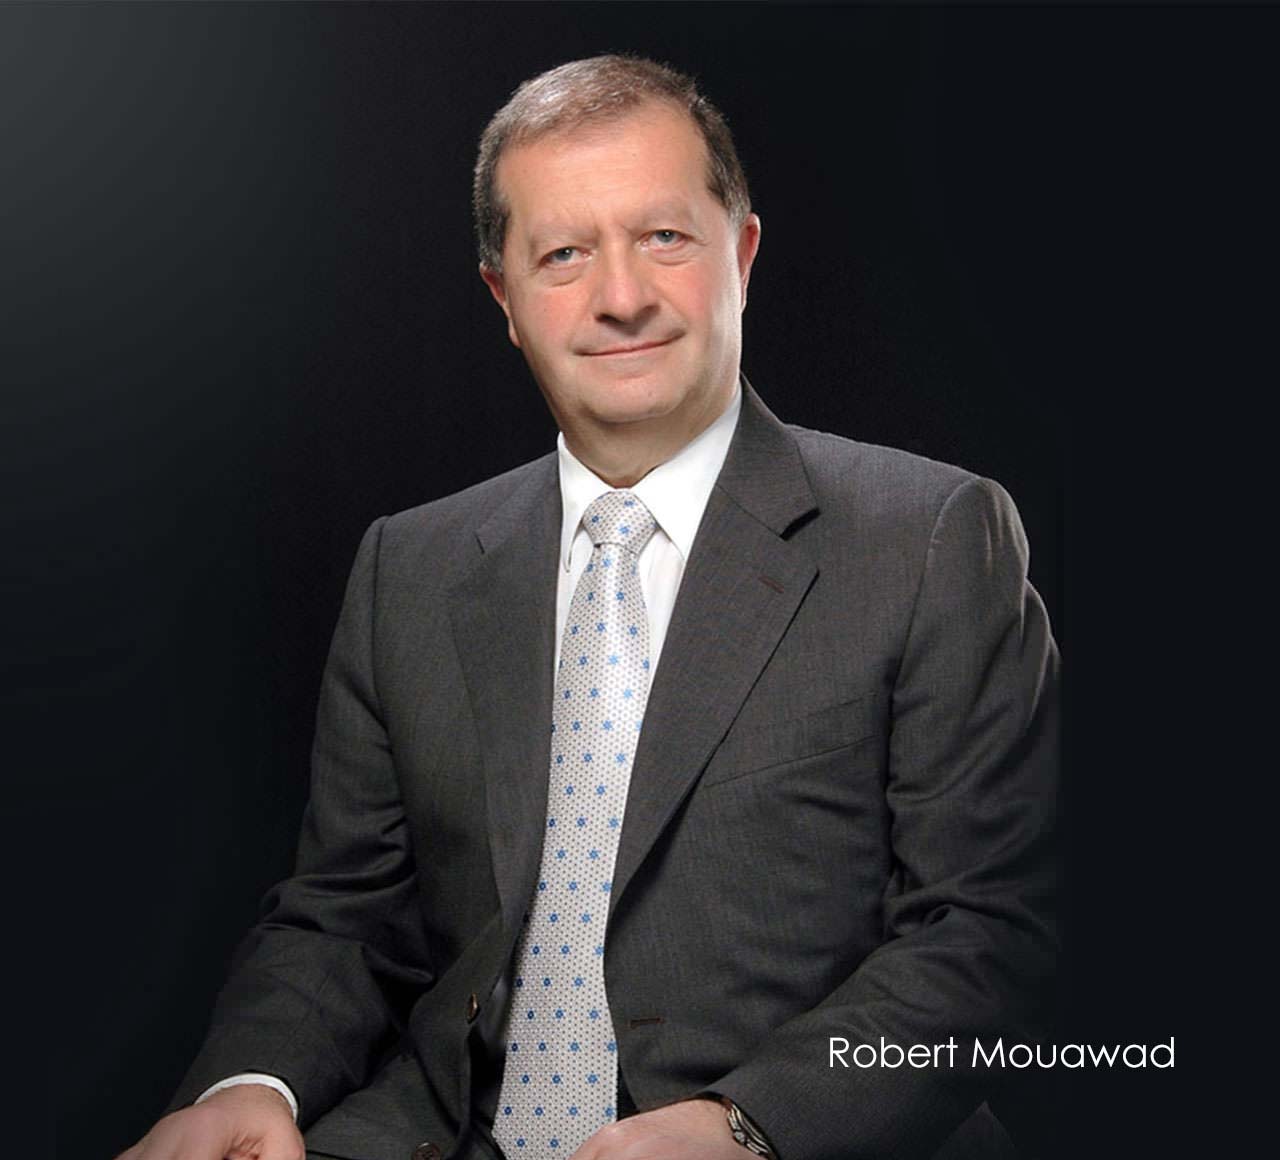 Robert Mouawad